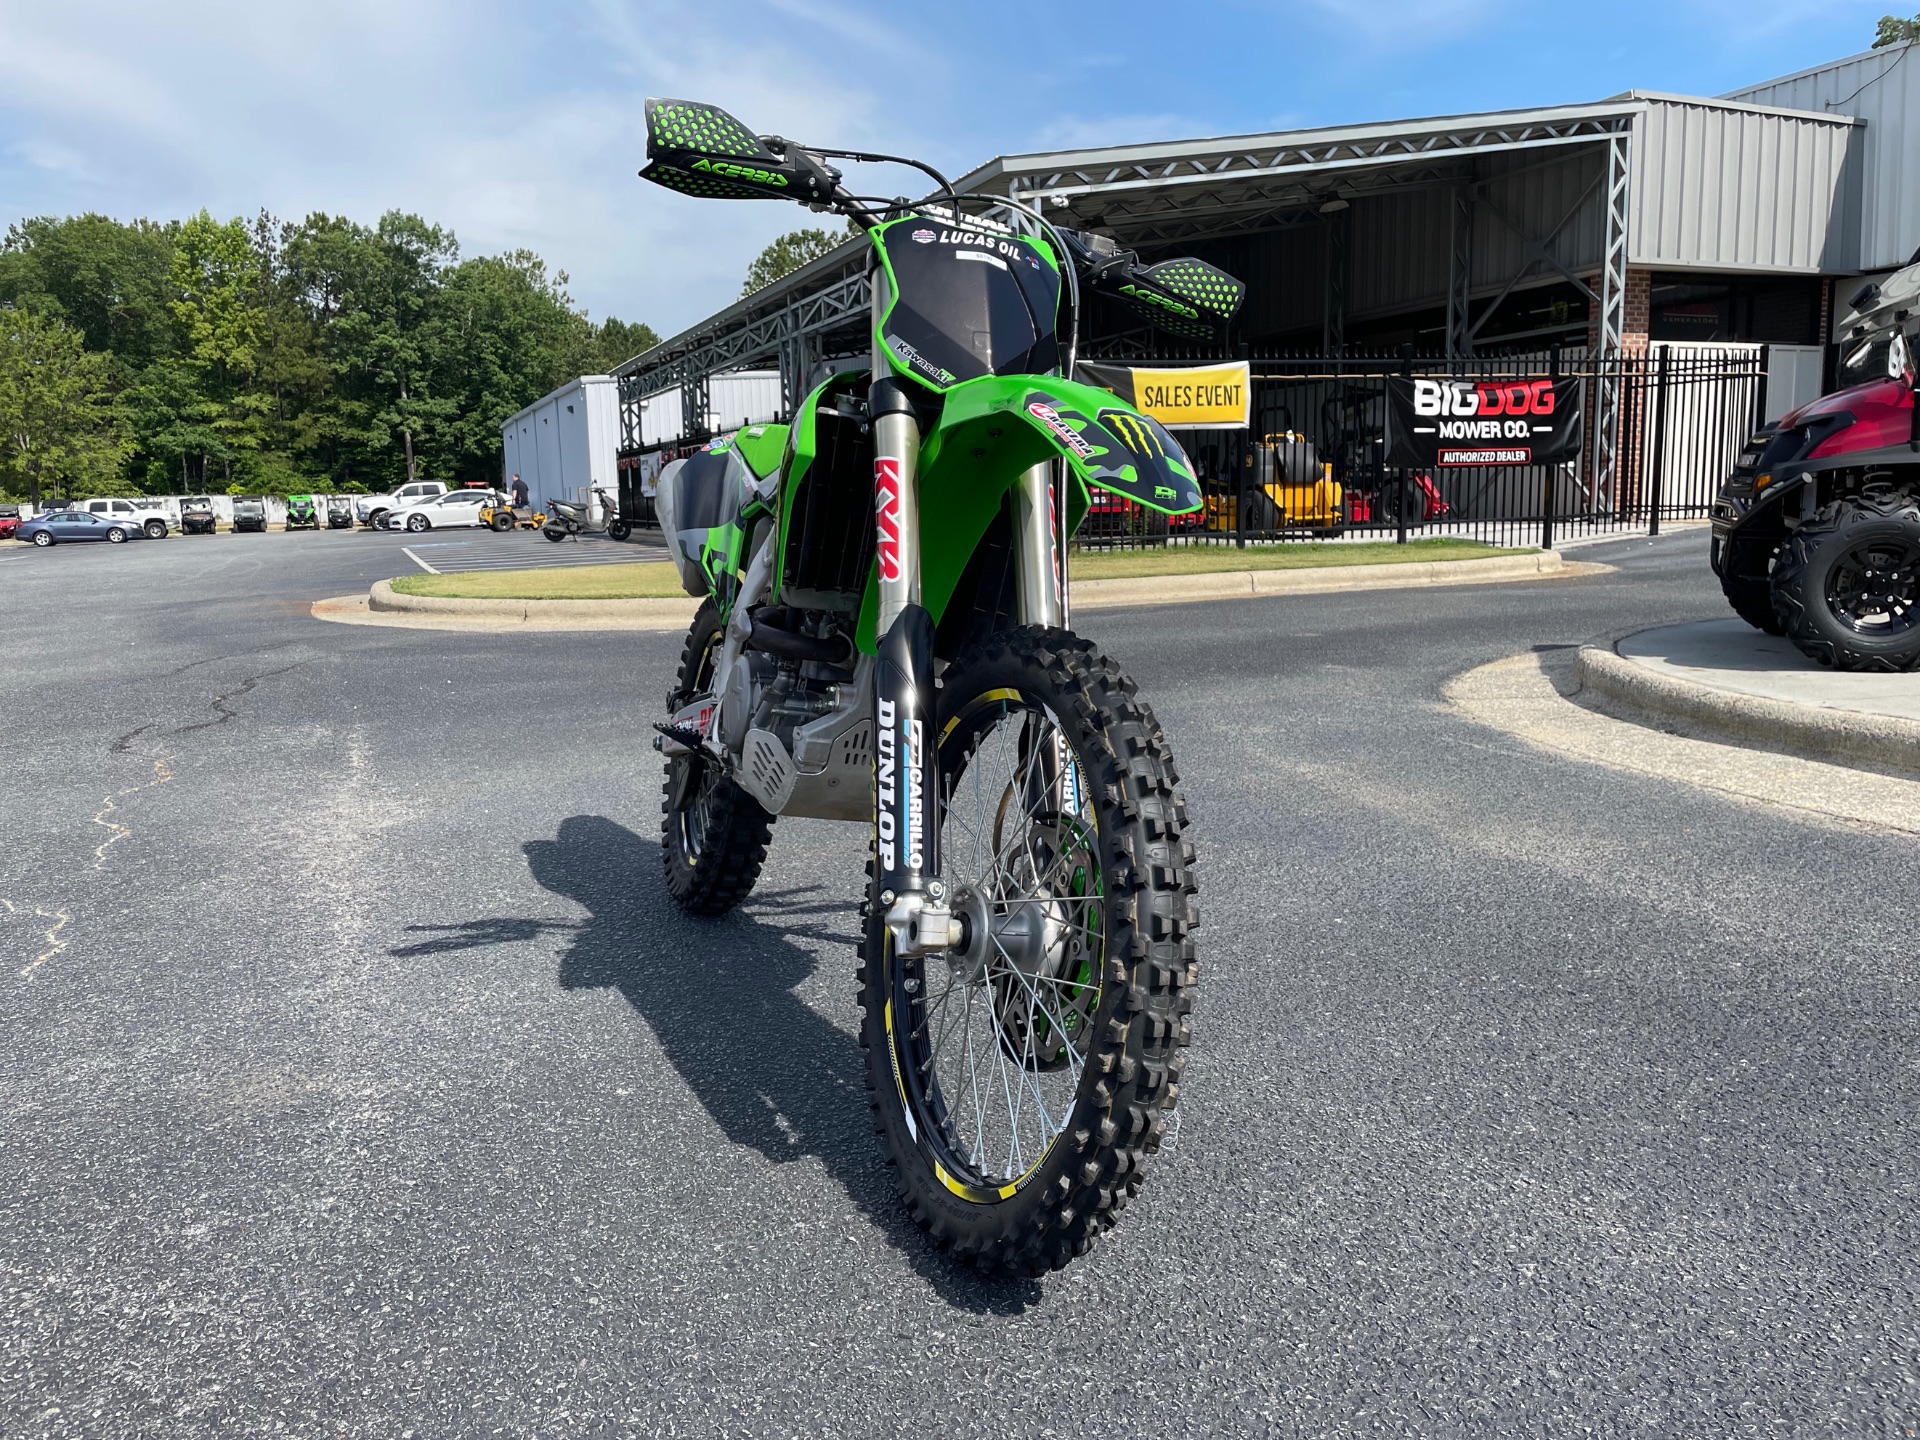 2021 Kawasaki KX 250X in Greenville, North Carolina - Photo 3